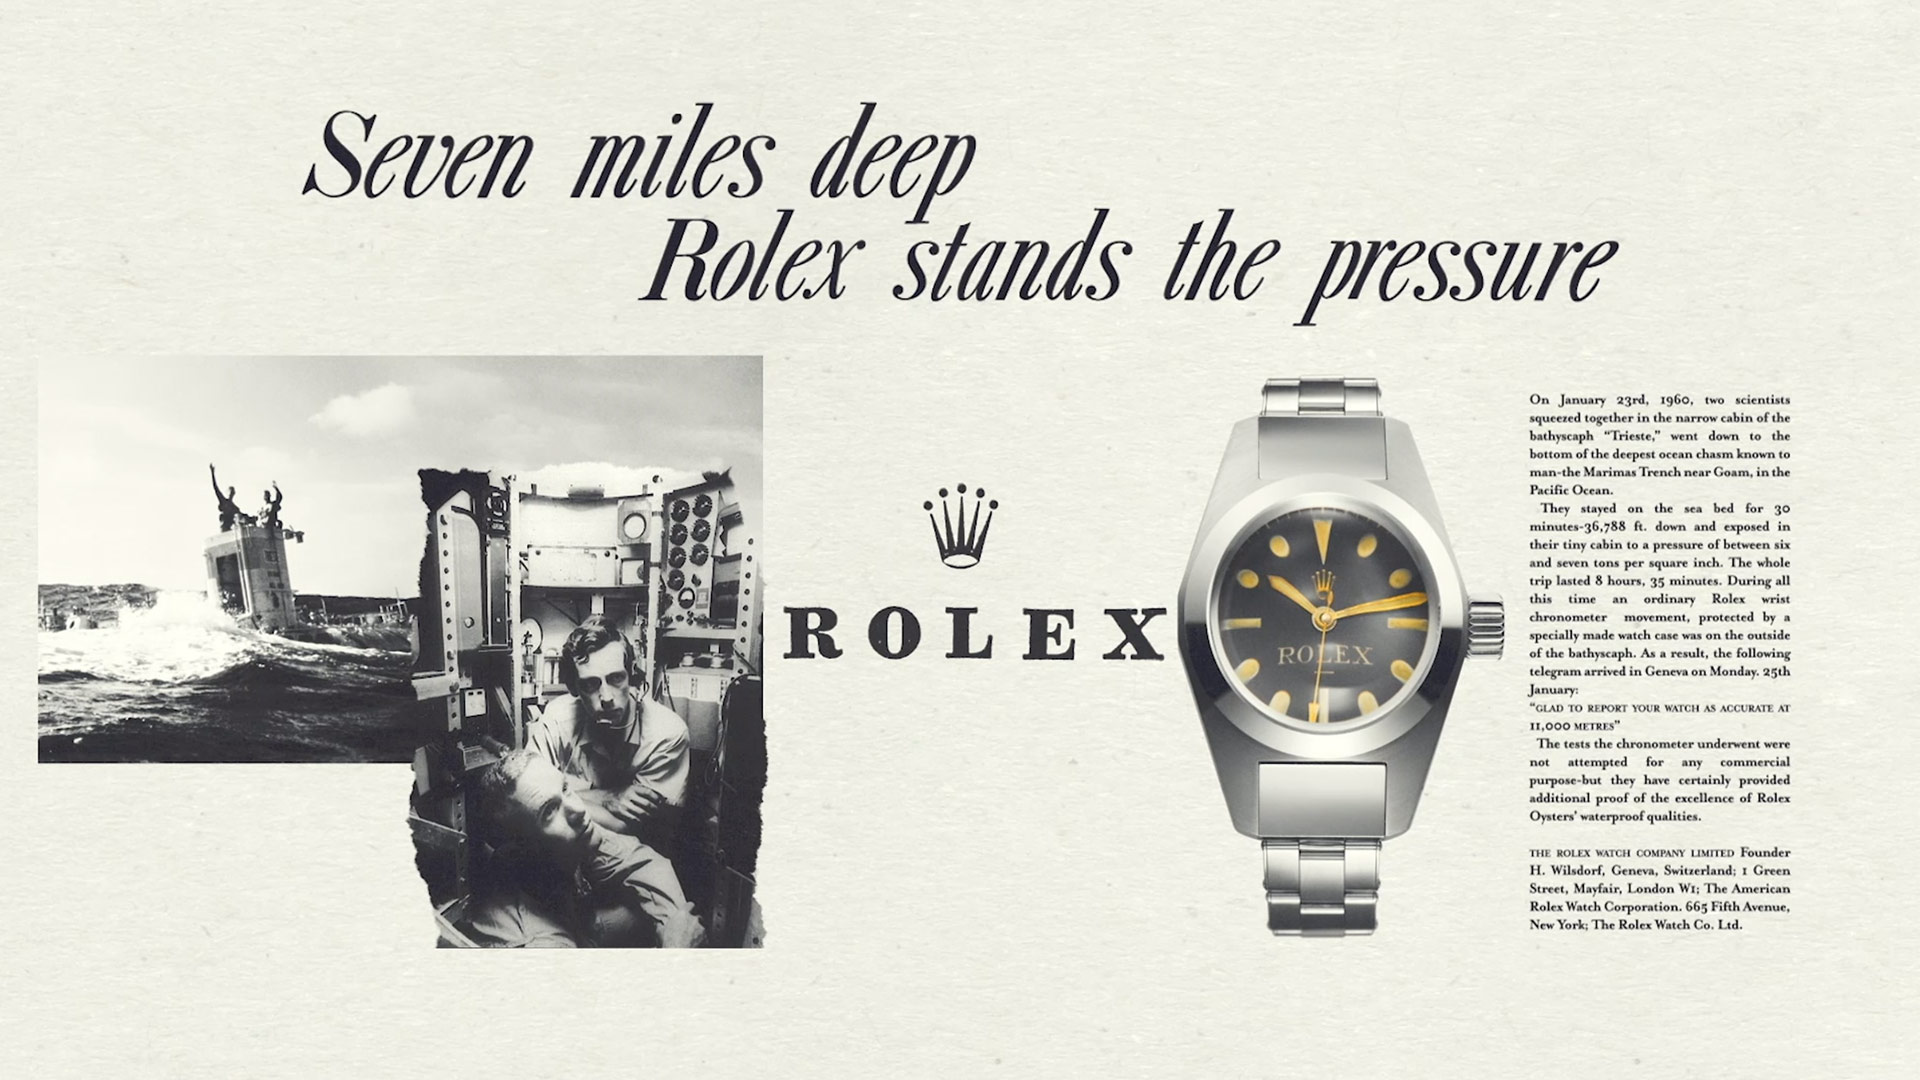 rolex brand origin